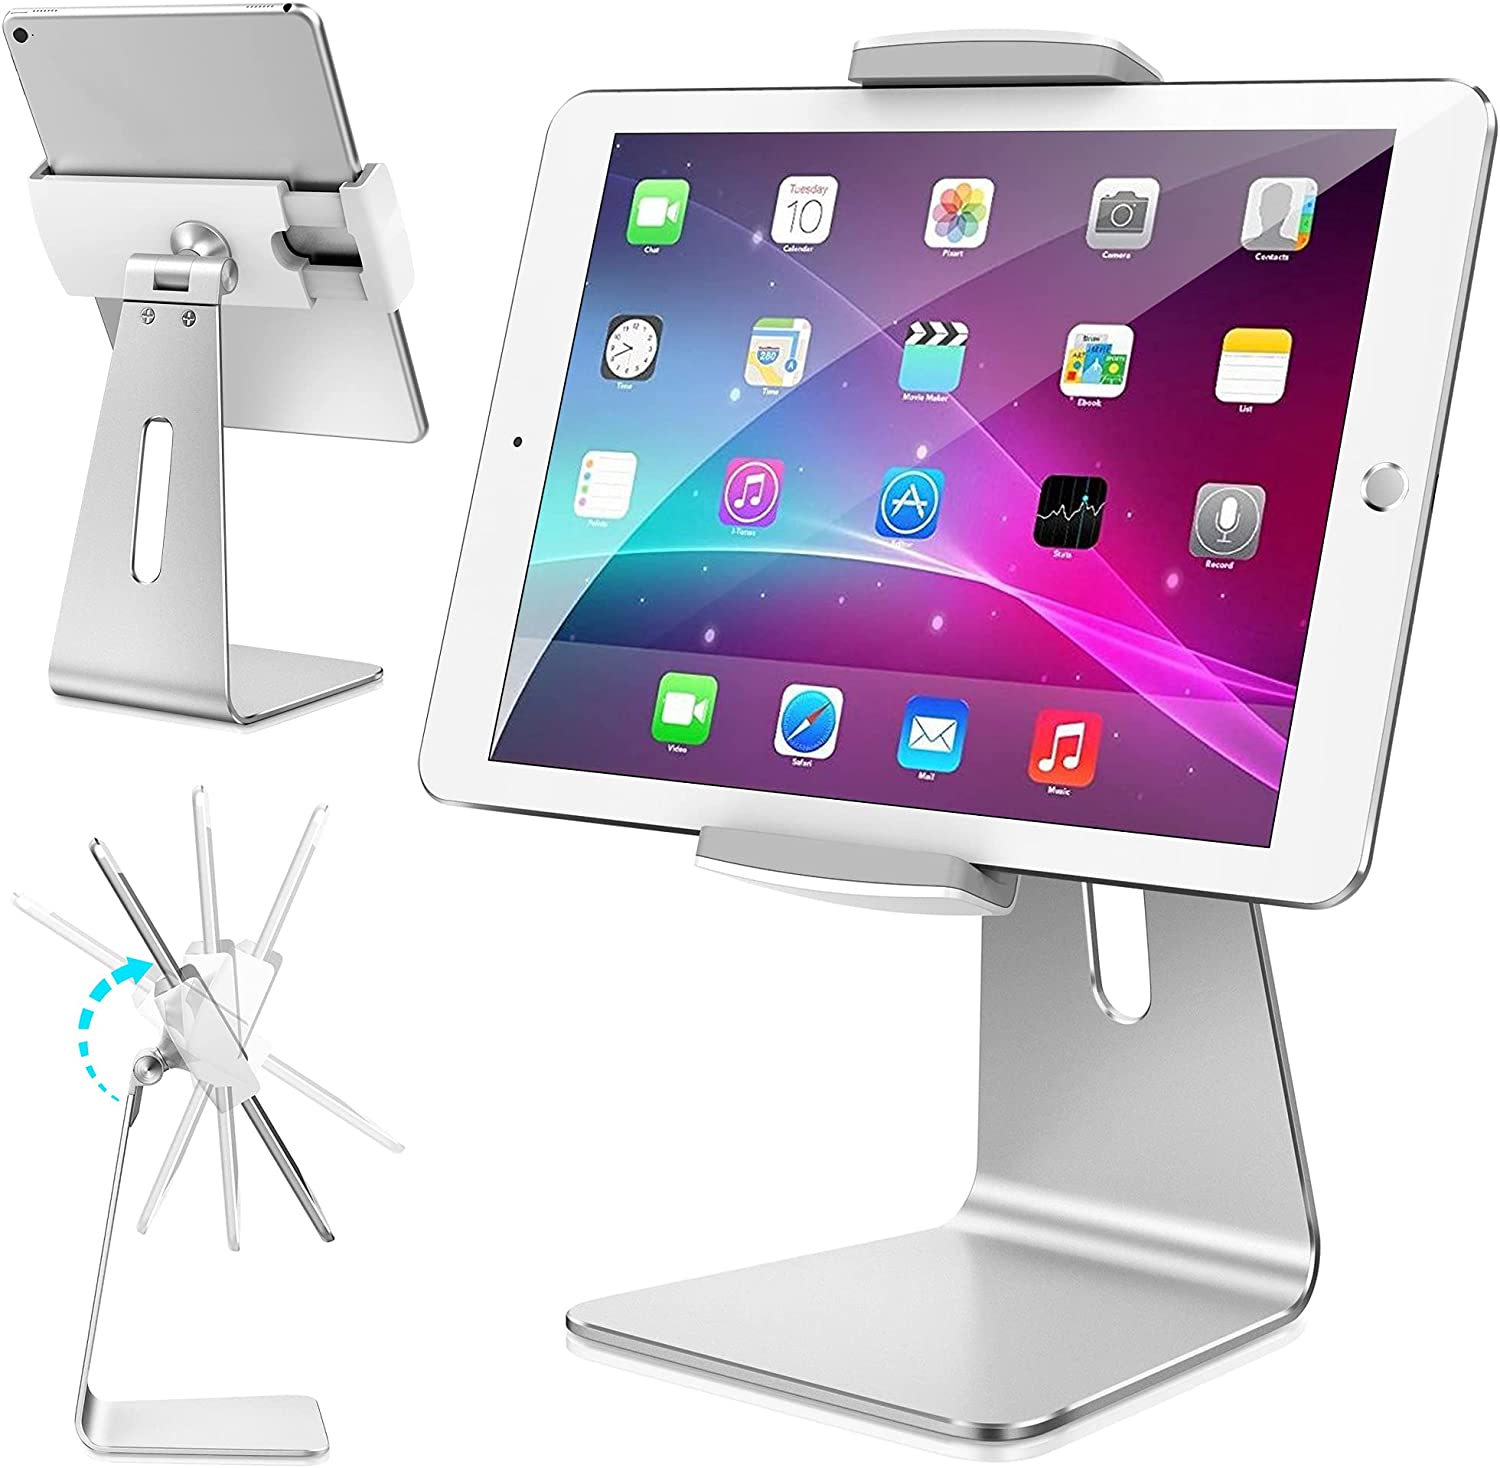 AboveTEK Elegante Soporte para Tablet de Aluminio, Soporte para iPad de 7 a 13 Pulgadas, Soporte para Tablet iPad Pro Air Mini Galaxy Tab, Soporte para Tablet para Tienda, escaparate, Oficina